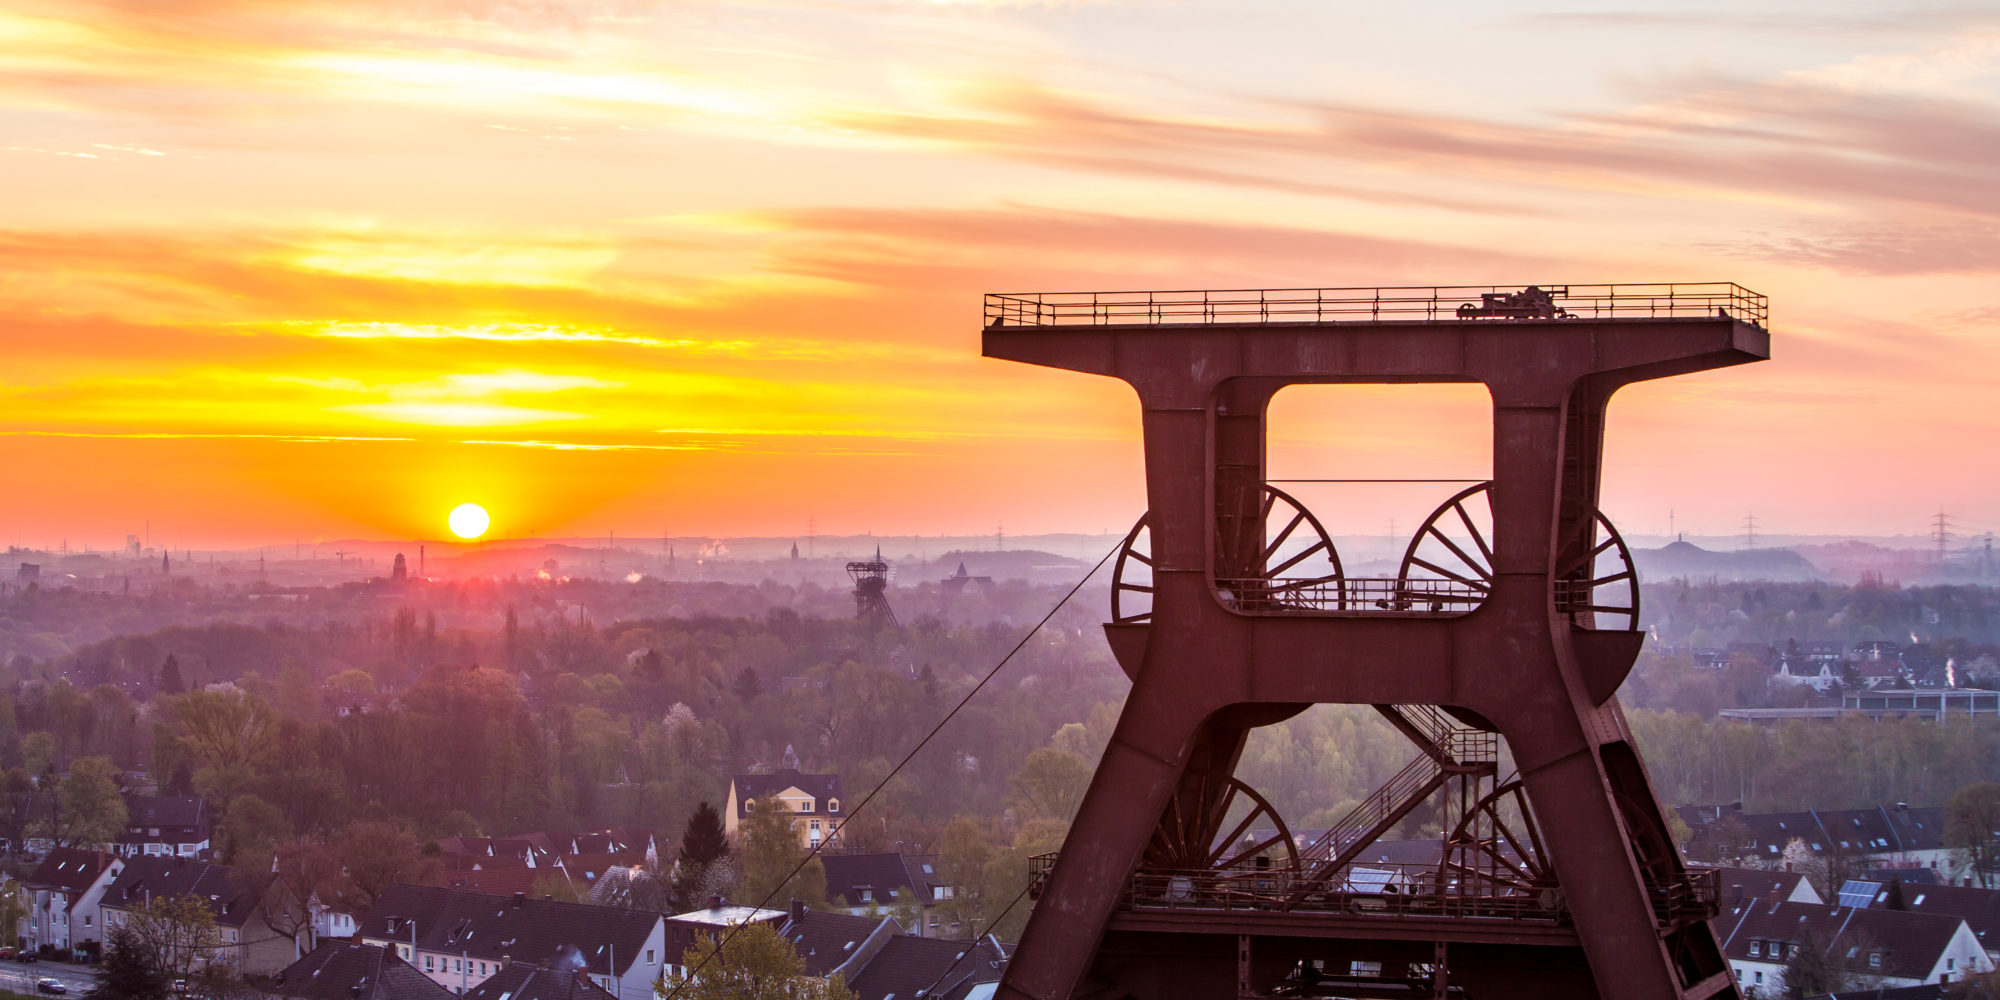 Das Foto zeigt das Fördergerüst des UNESCO-Welterbe Zollverein in Essen im Sonnenuntergang